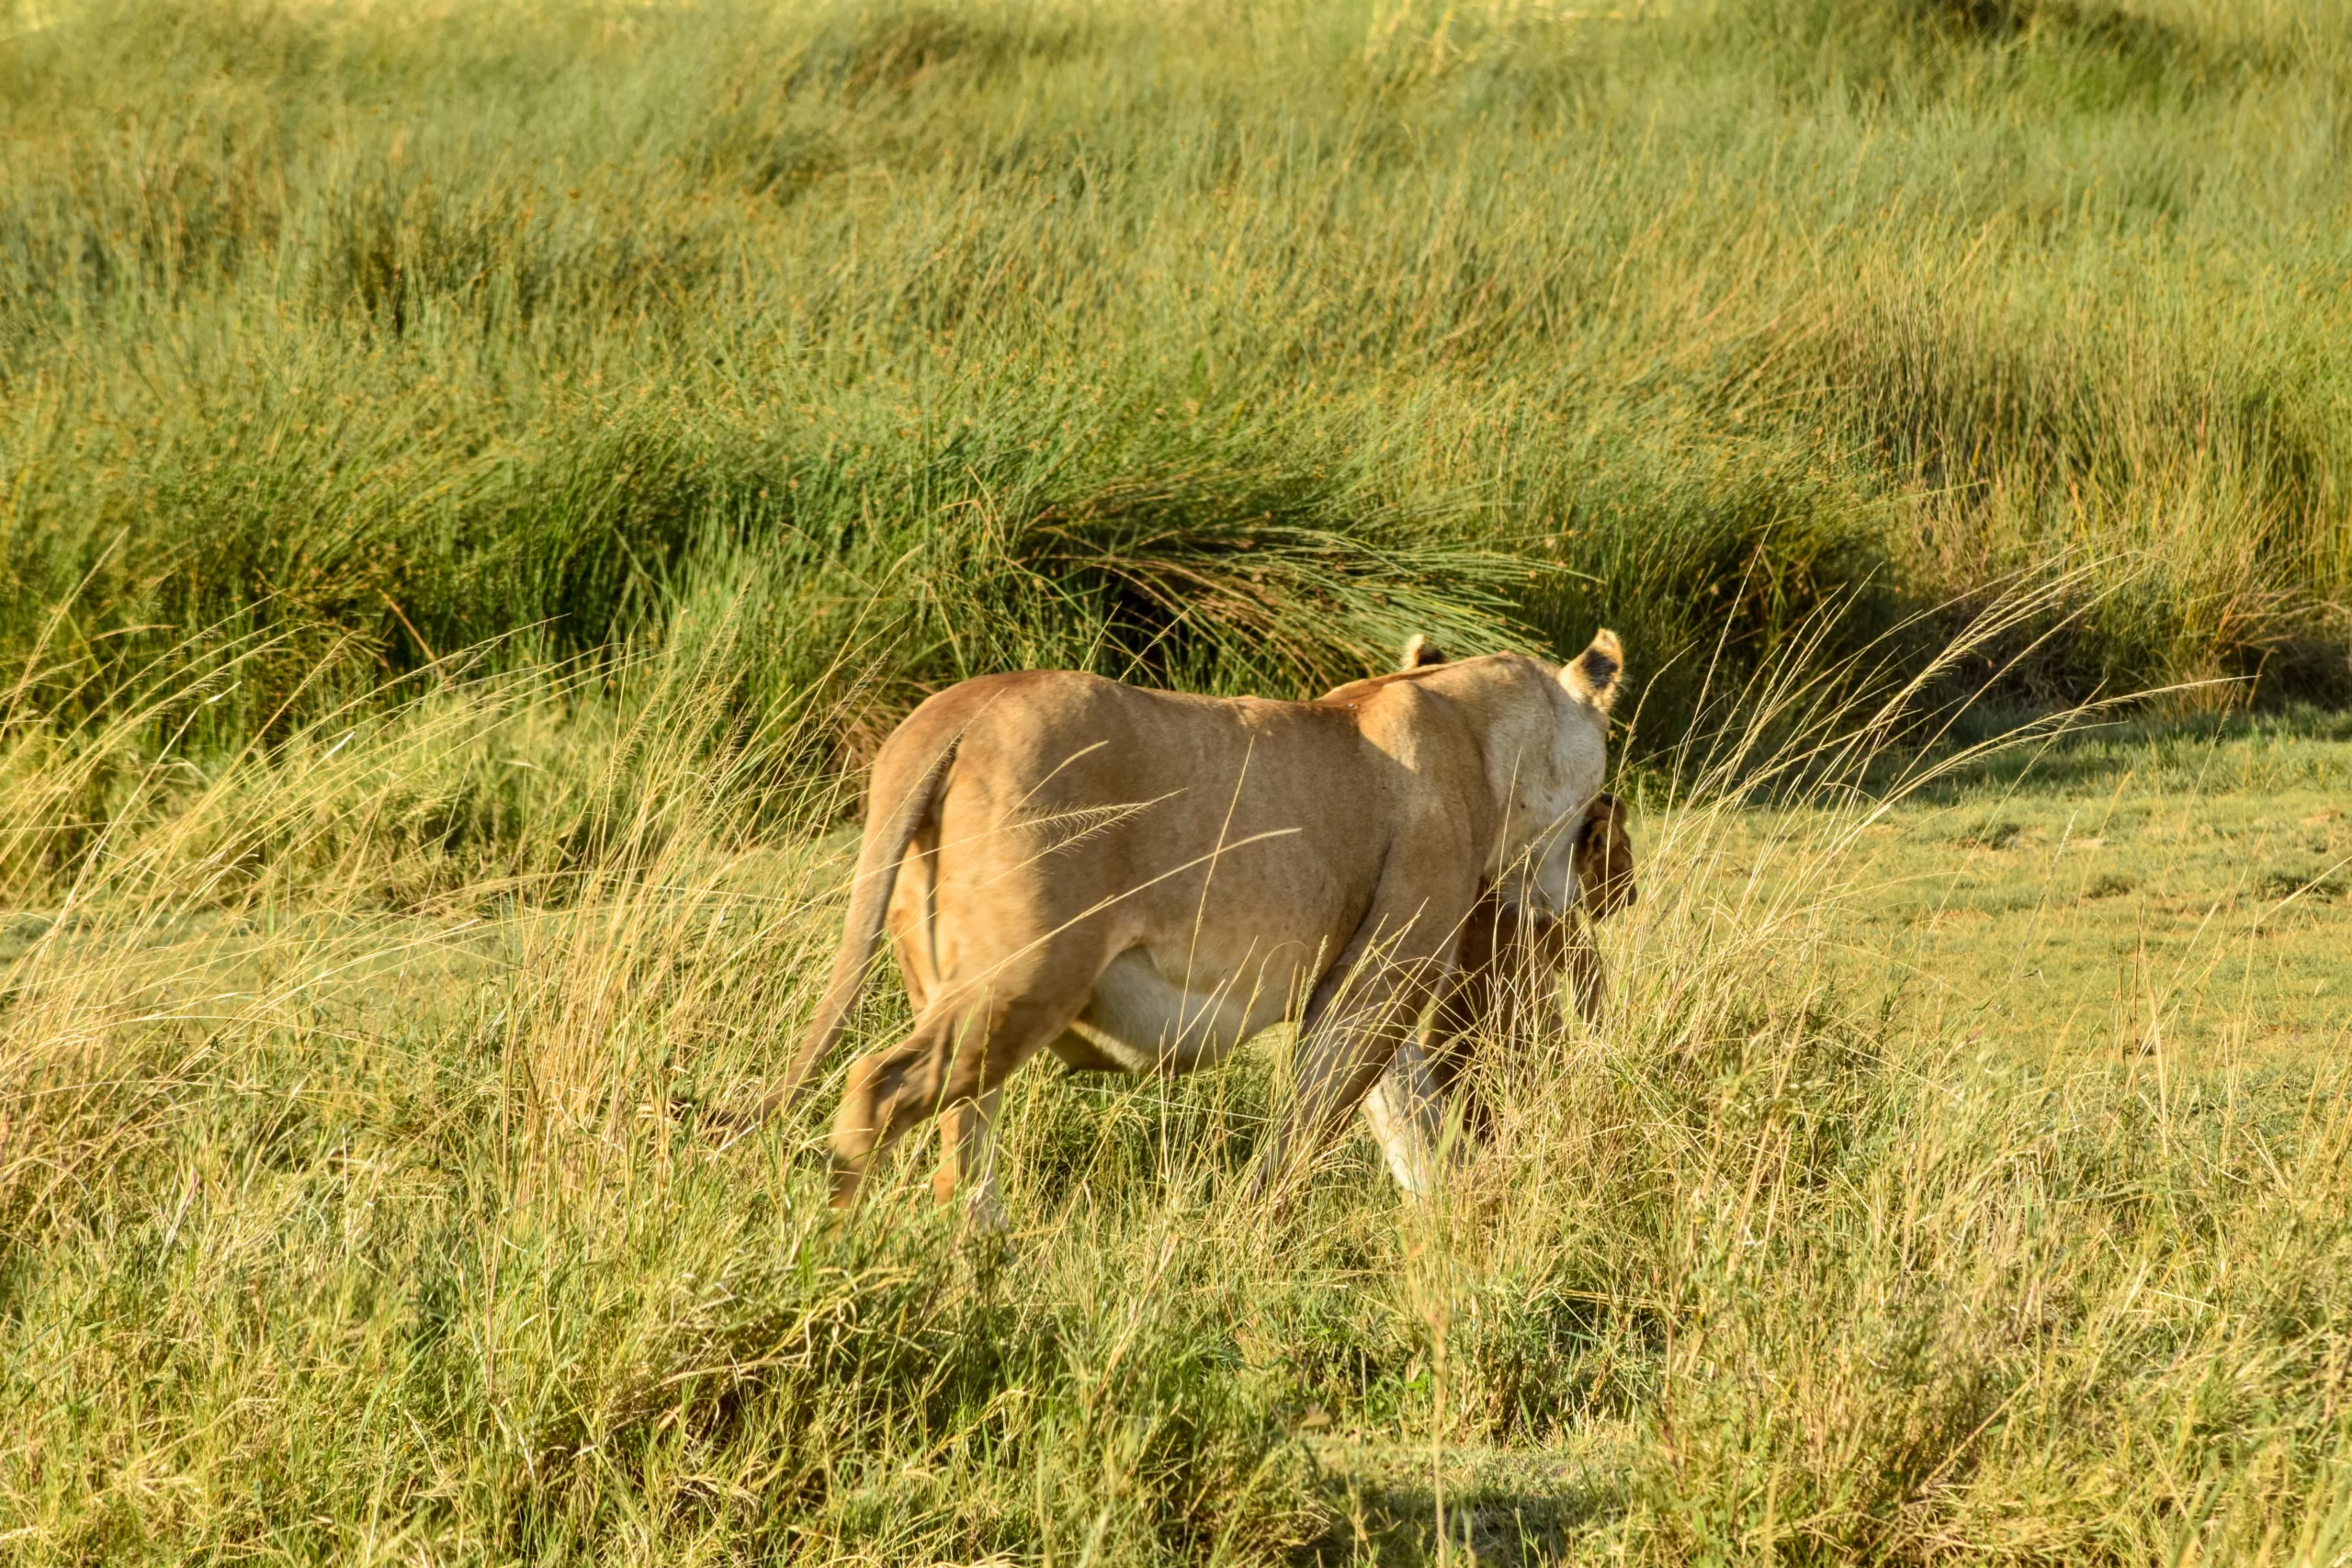 lionne de dos avec un lionceau dans la gueule, dernier jour de notre safari de 2 jours dans le Serengeti